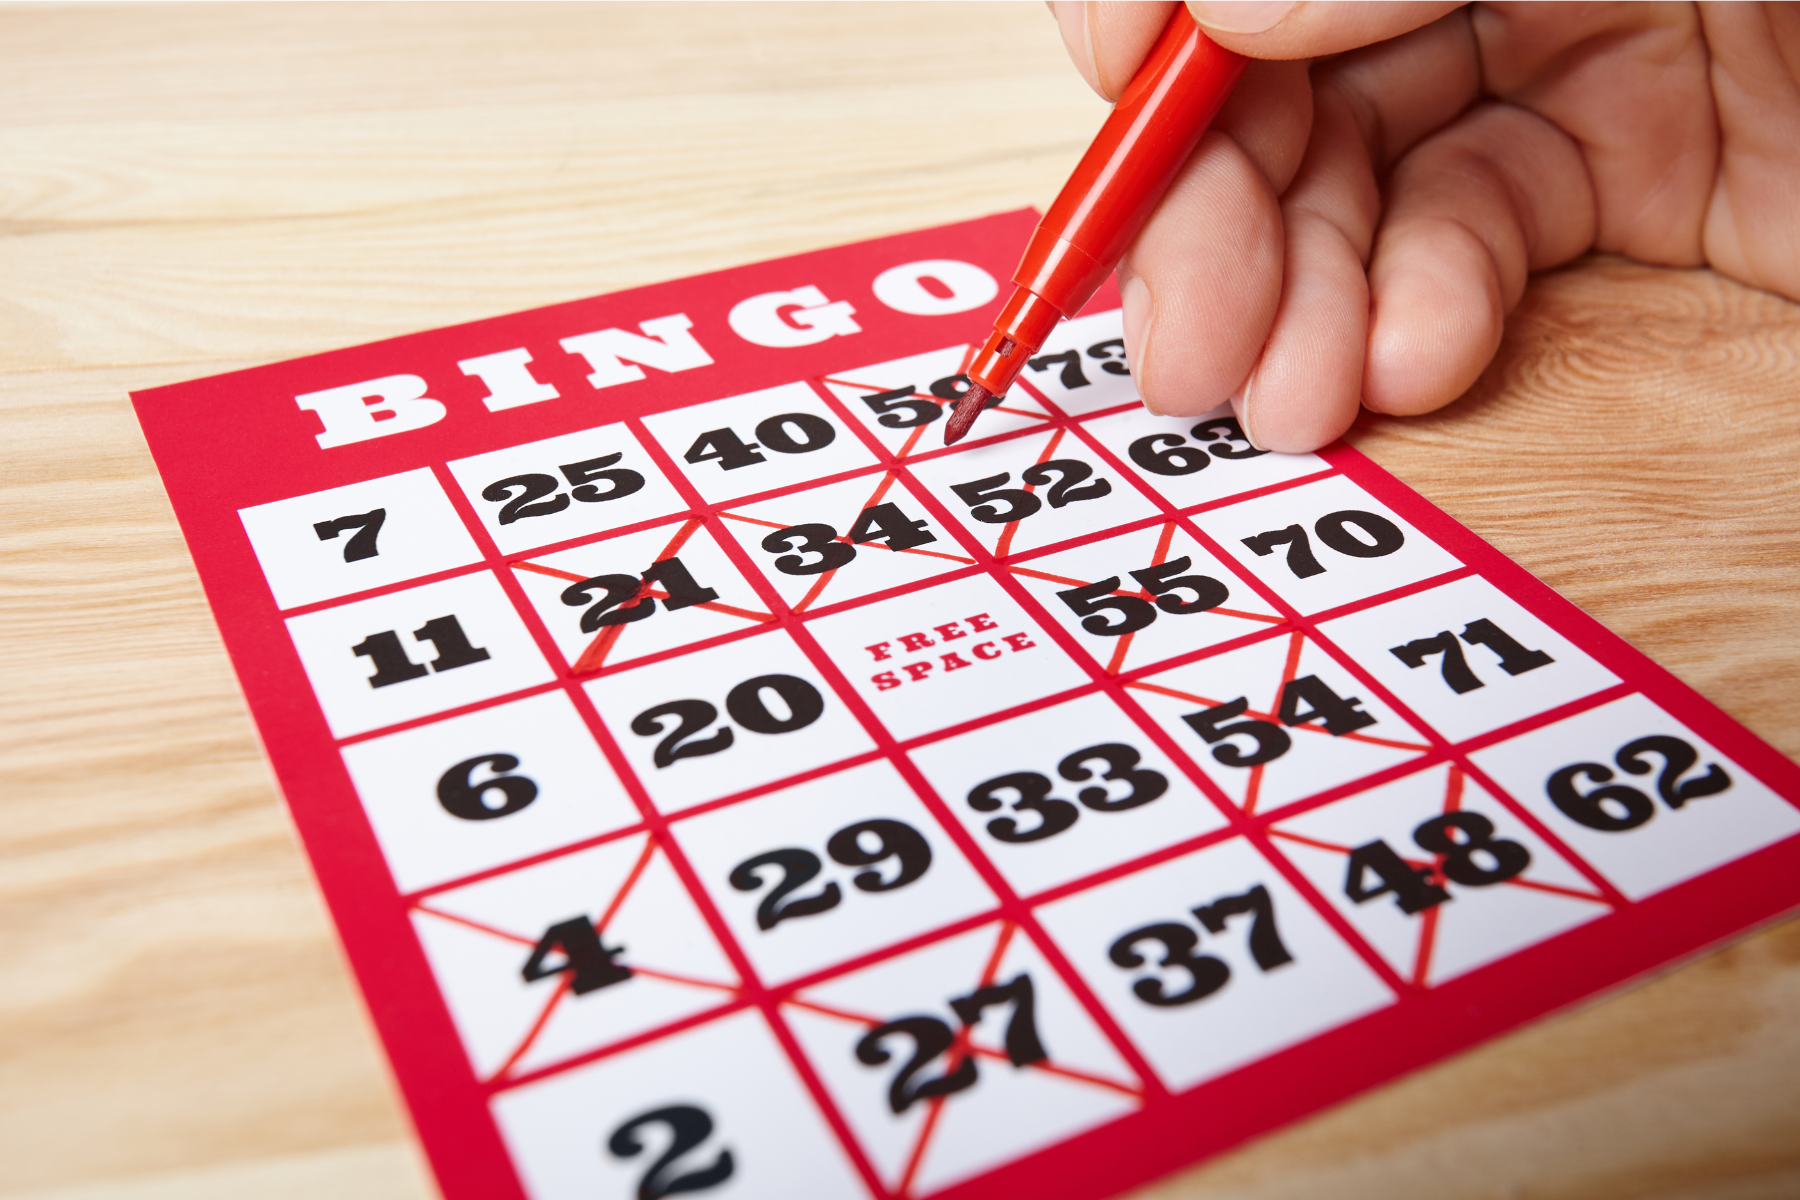 Programa de Bingo y Actividad Física para Personas Mayores